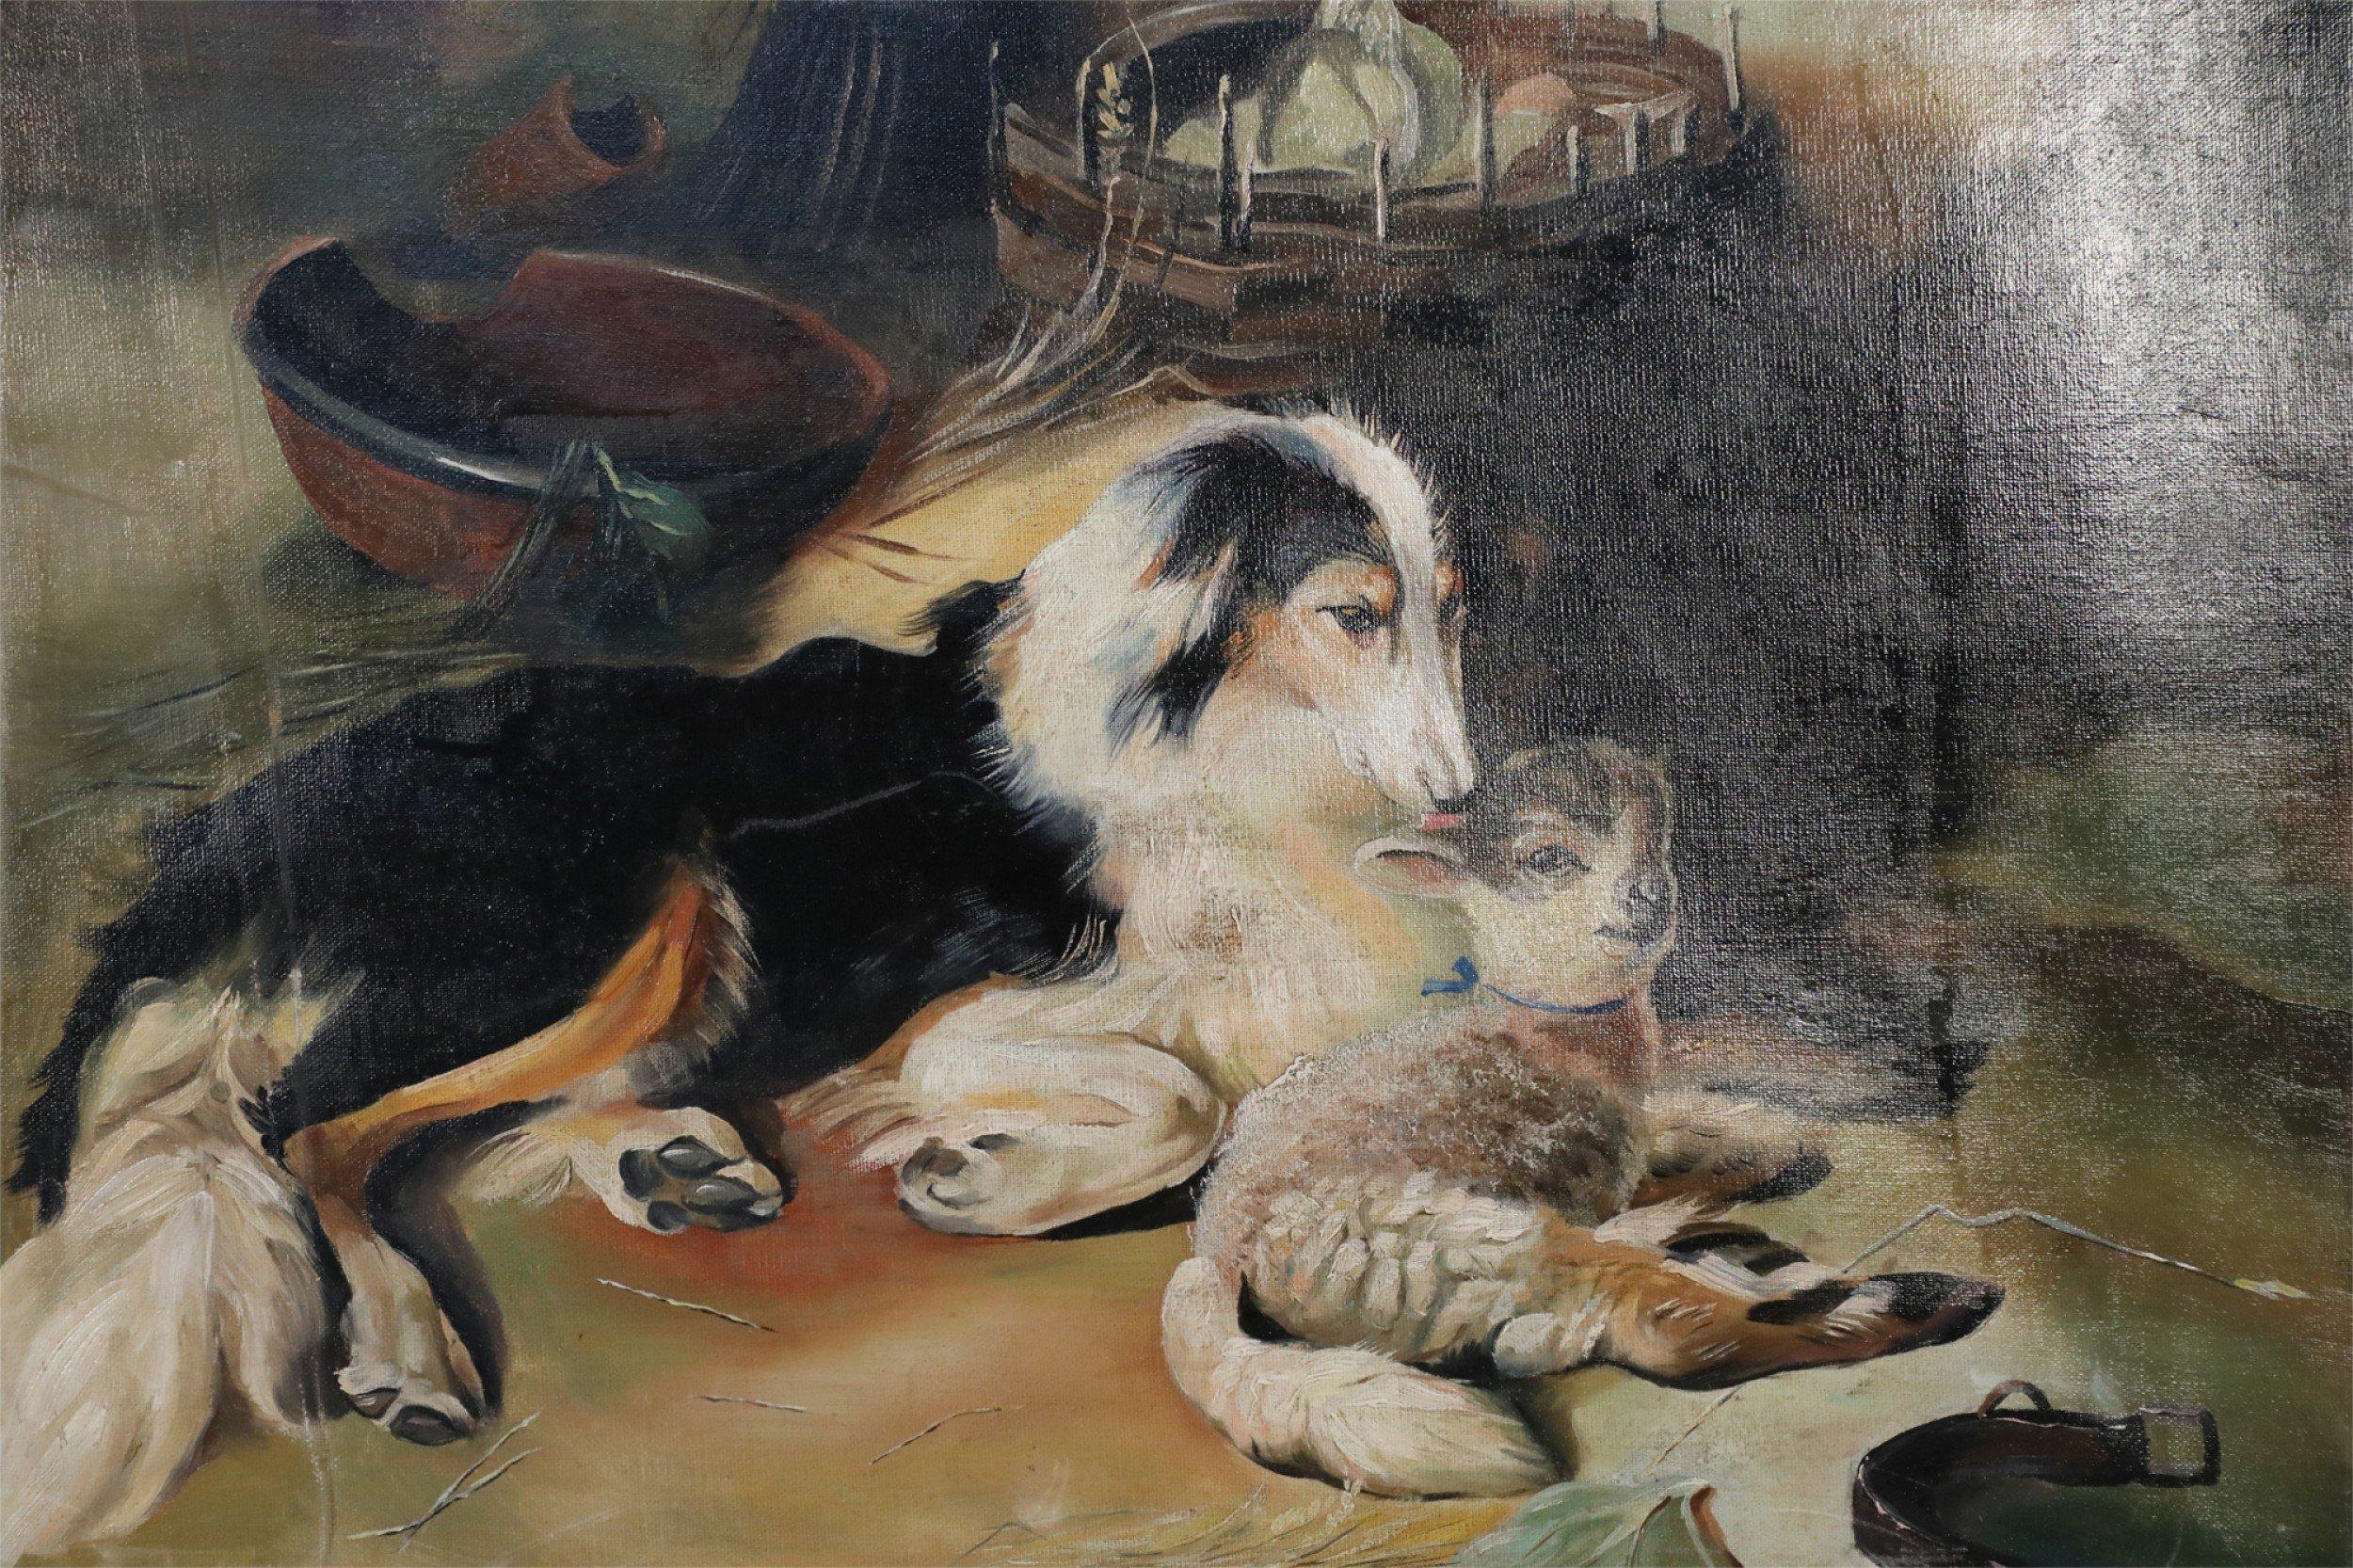 Peinture à l'huile vintage (20e siècle) représentant un chien allongé à côté d'un agneau dans une grange remplie d'outils de ferme, sur toile rectangulaire non encadrée.
 